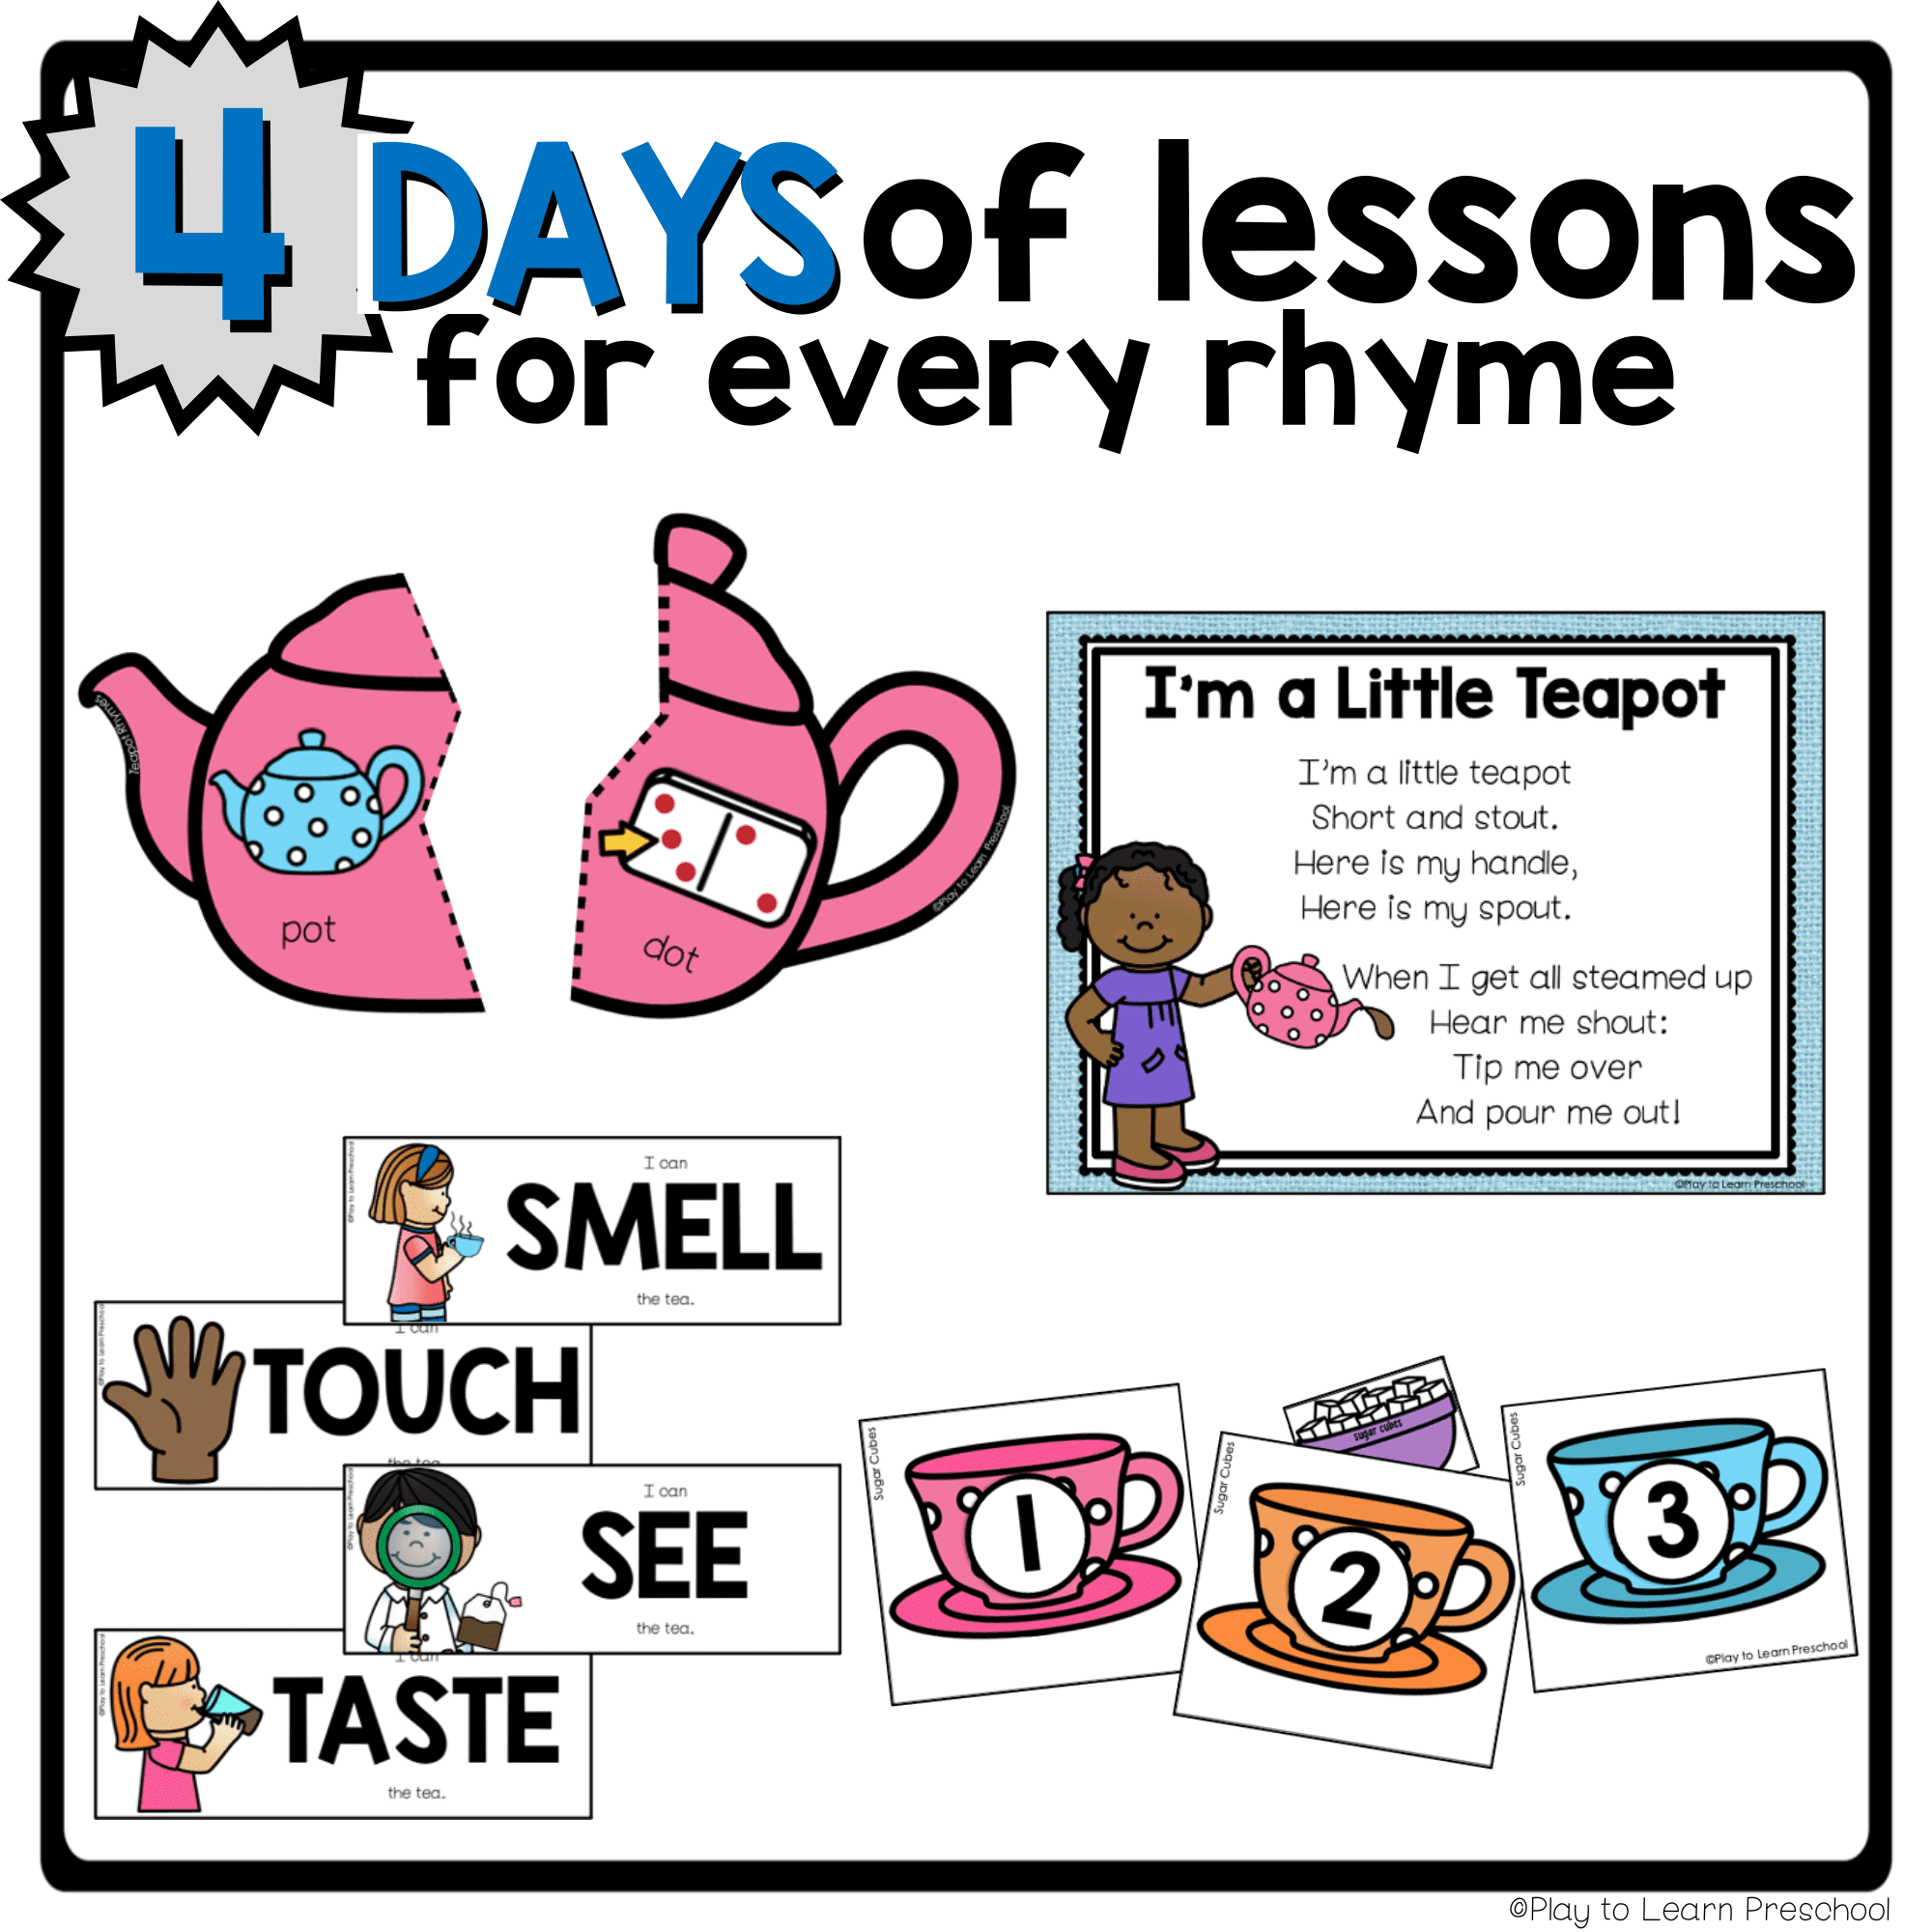 Preschool Nursery Rhymes